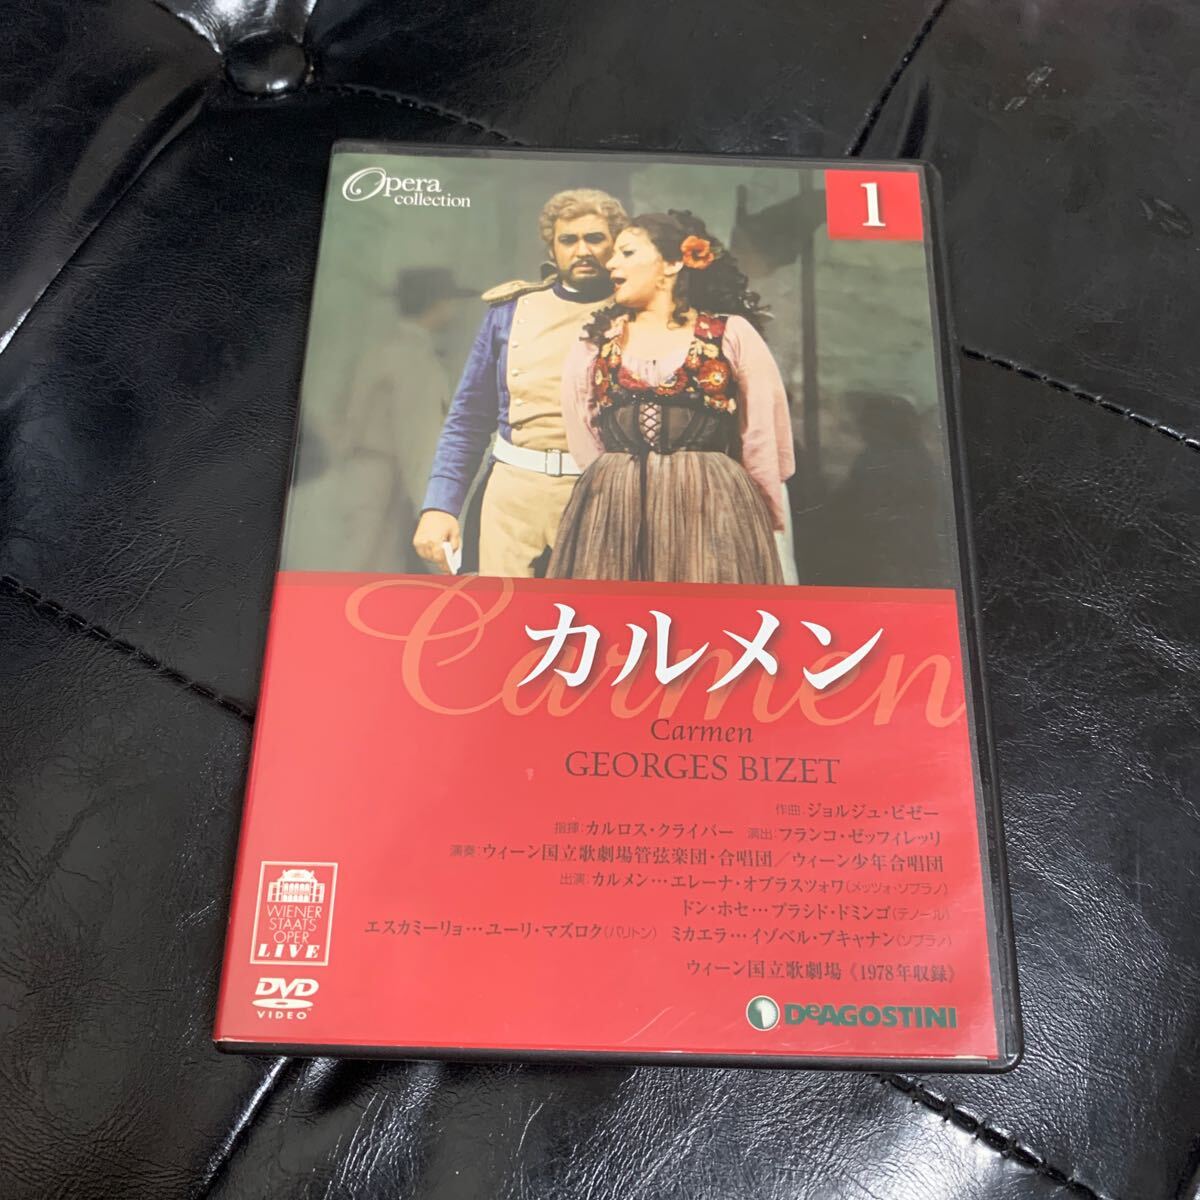 DVD opera * collection karu men der Goss tea ni* Japan opera 